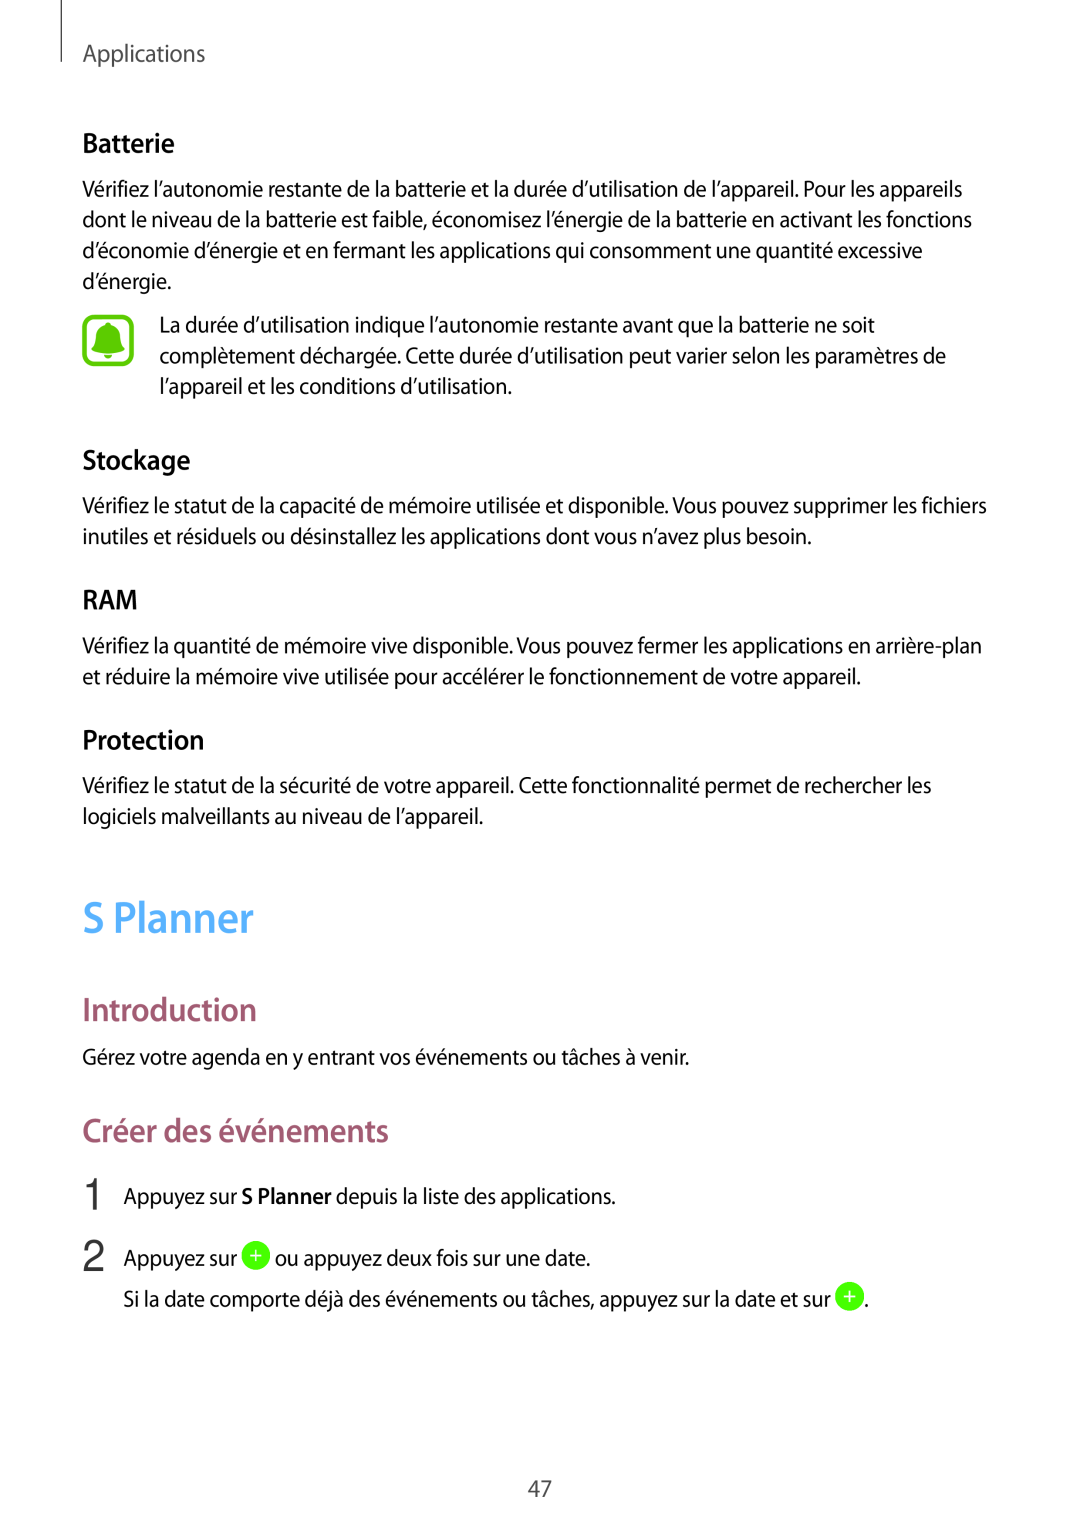 Samsung SM-T280NZWAXEF manual S Planner, Créer des événements, Batterie, Stockage, Protection, Introduction, Applications 